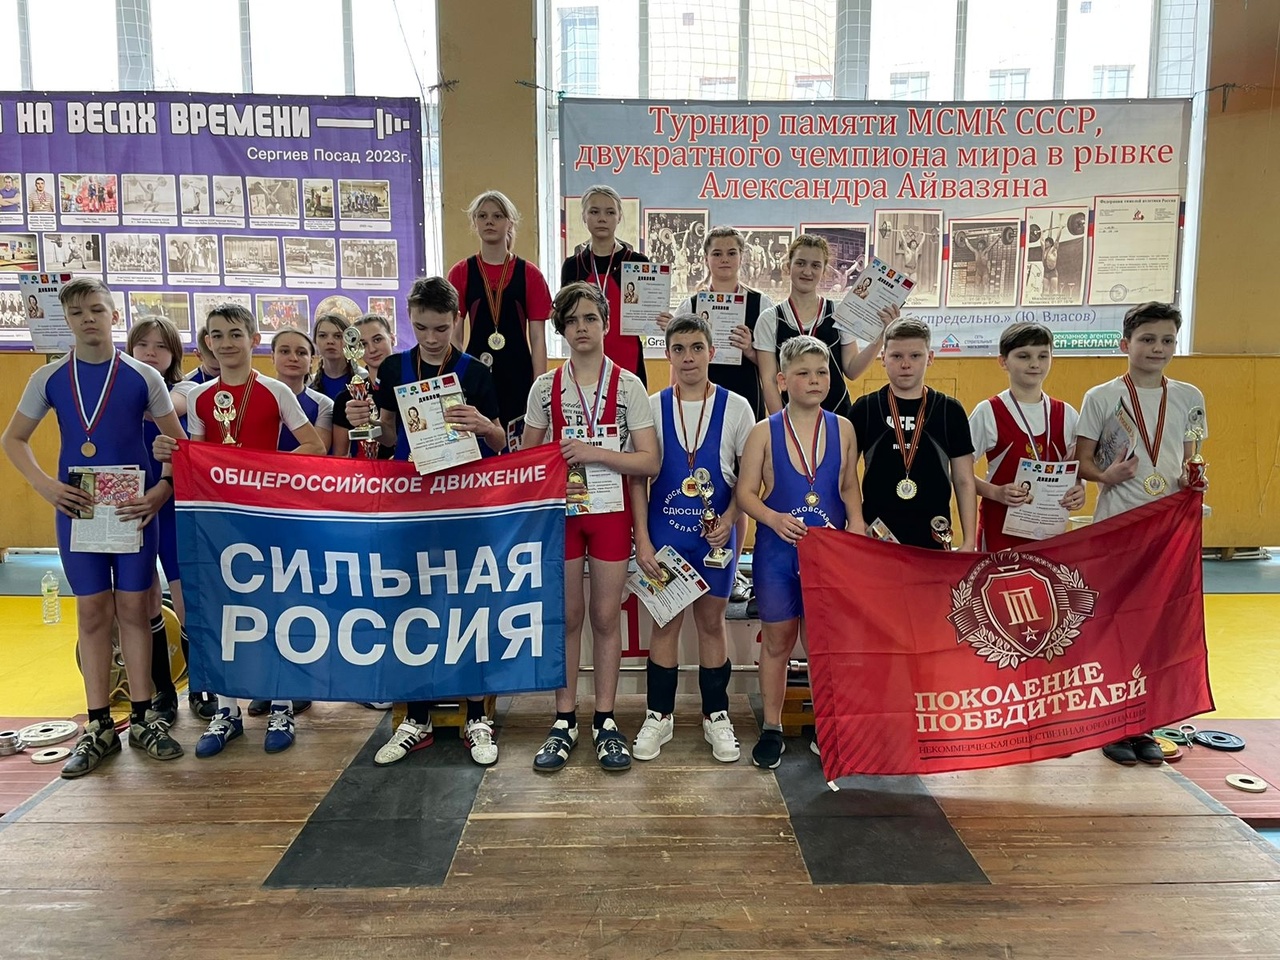 Турнир памяти МСМК СССР, двукратного чемпиона мира в рывке двумя руками, Александра Айвазяна.